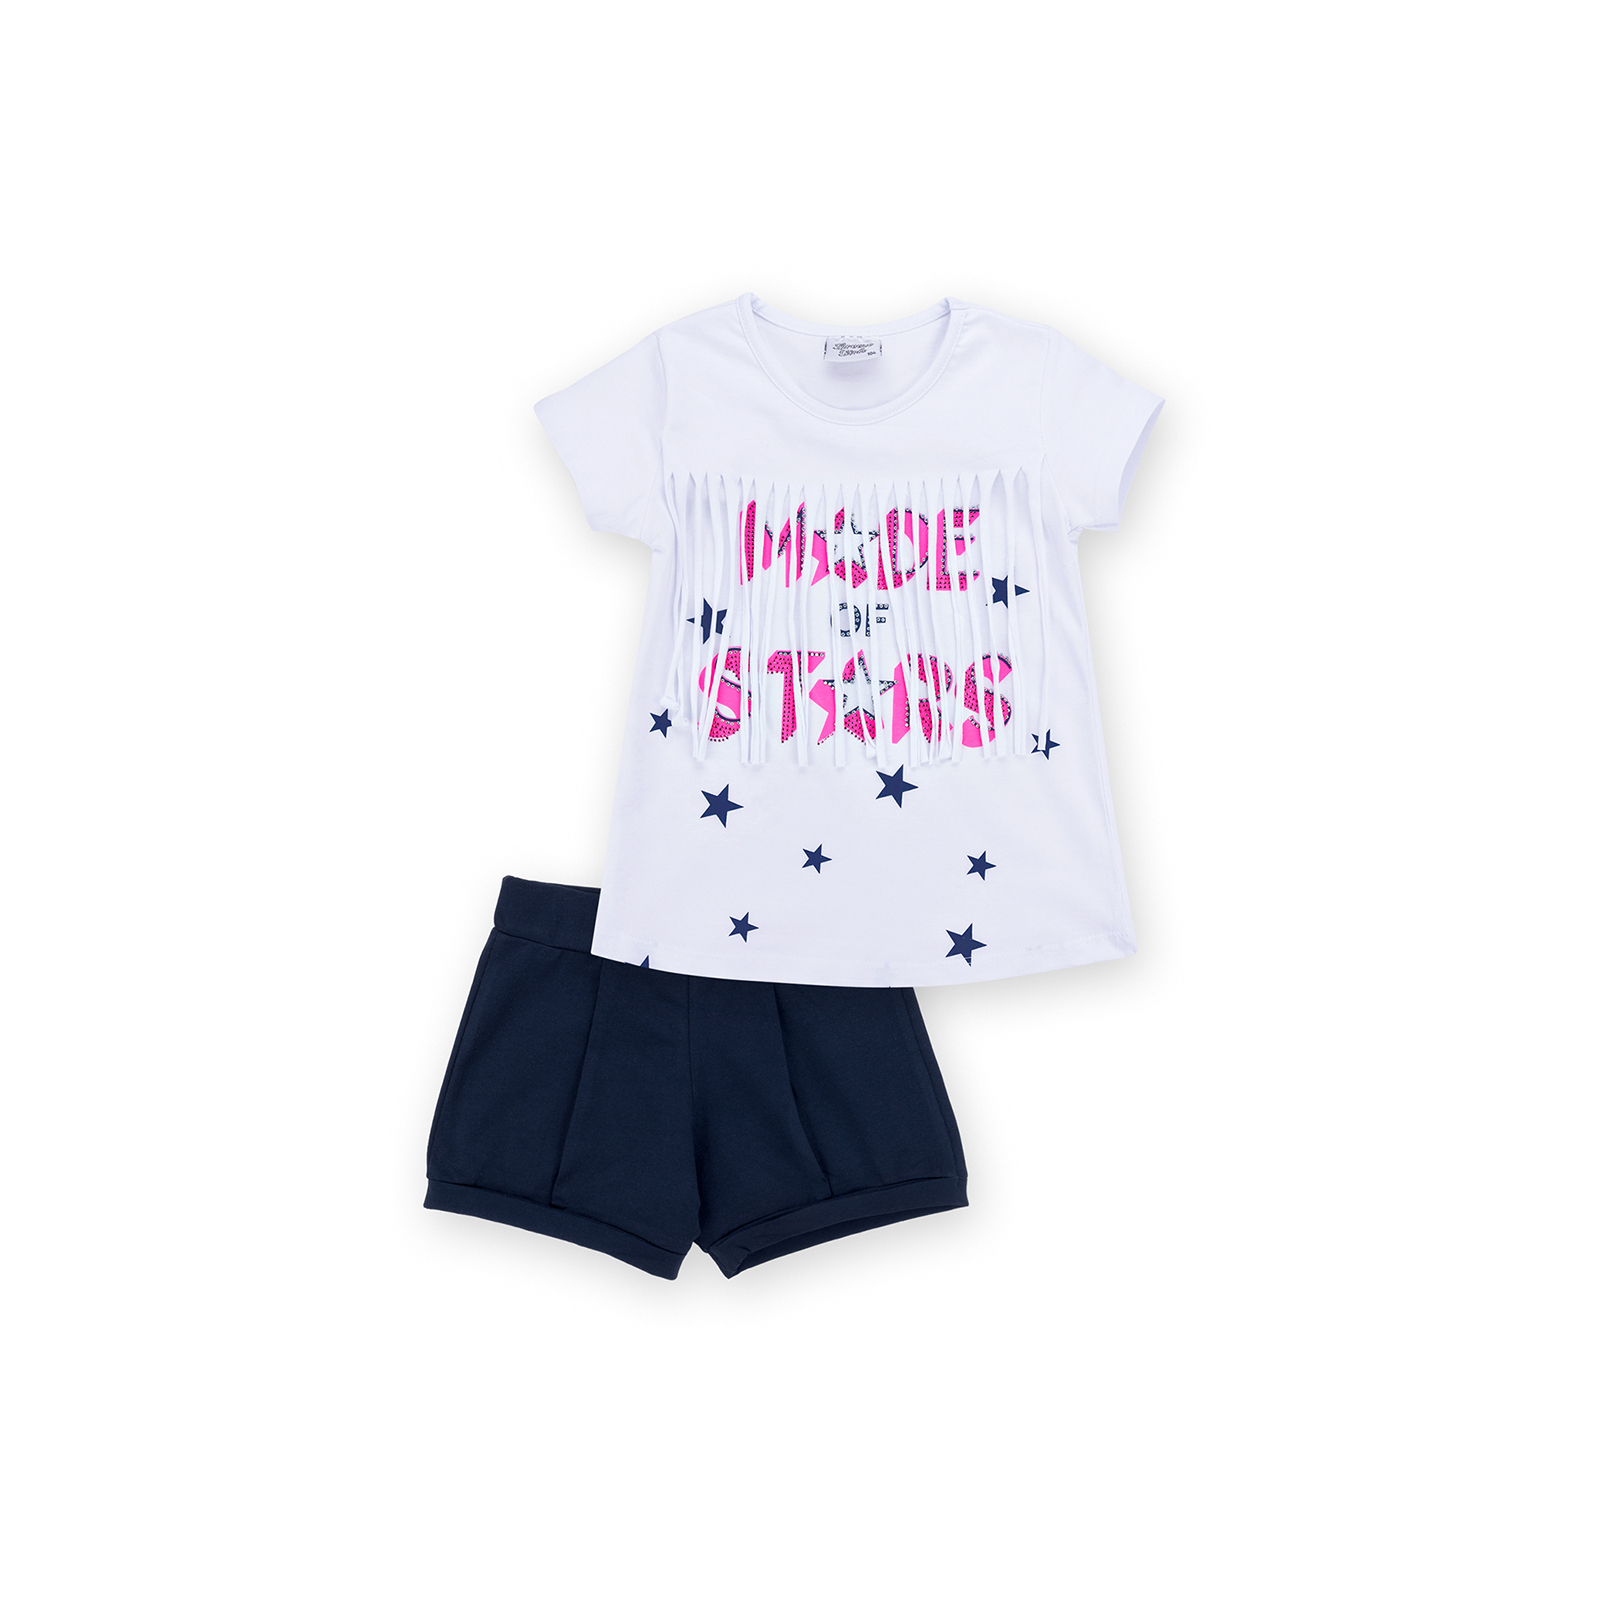 Набор детской одежды Breeze футболка со звездочками с шортами (9036-122G-white)